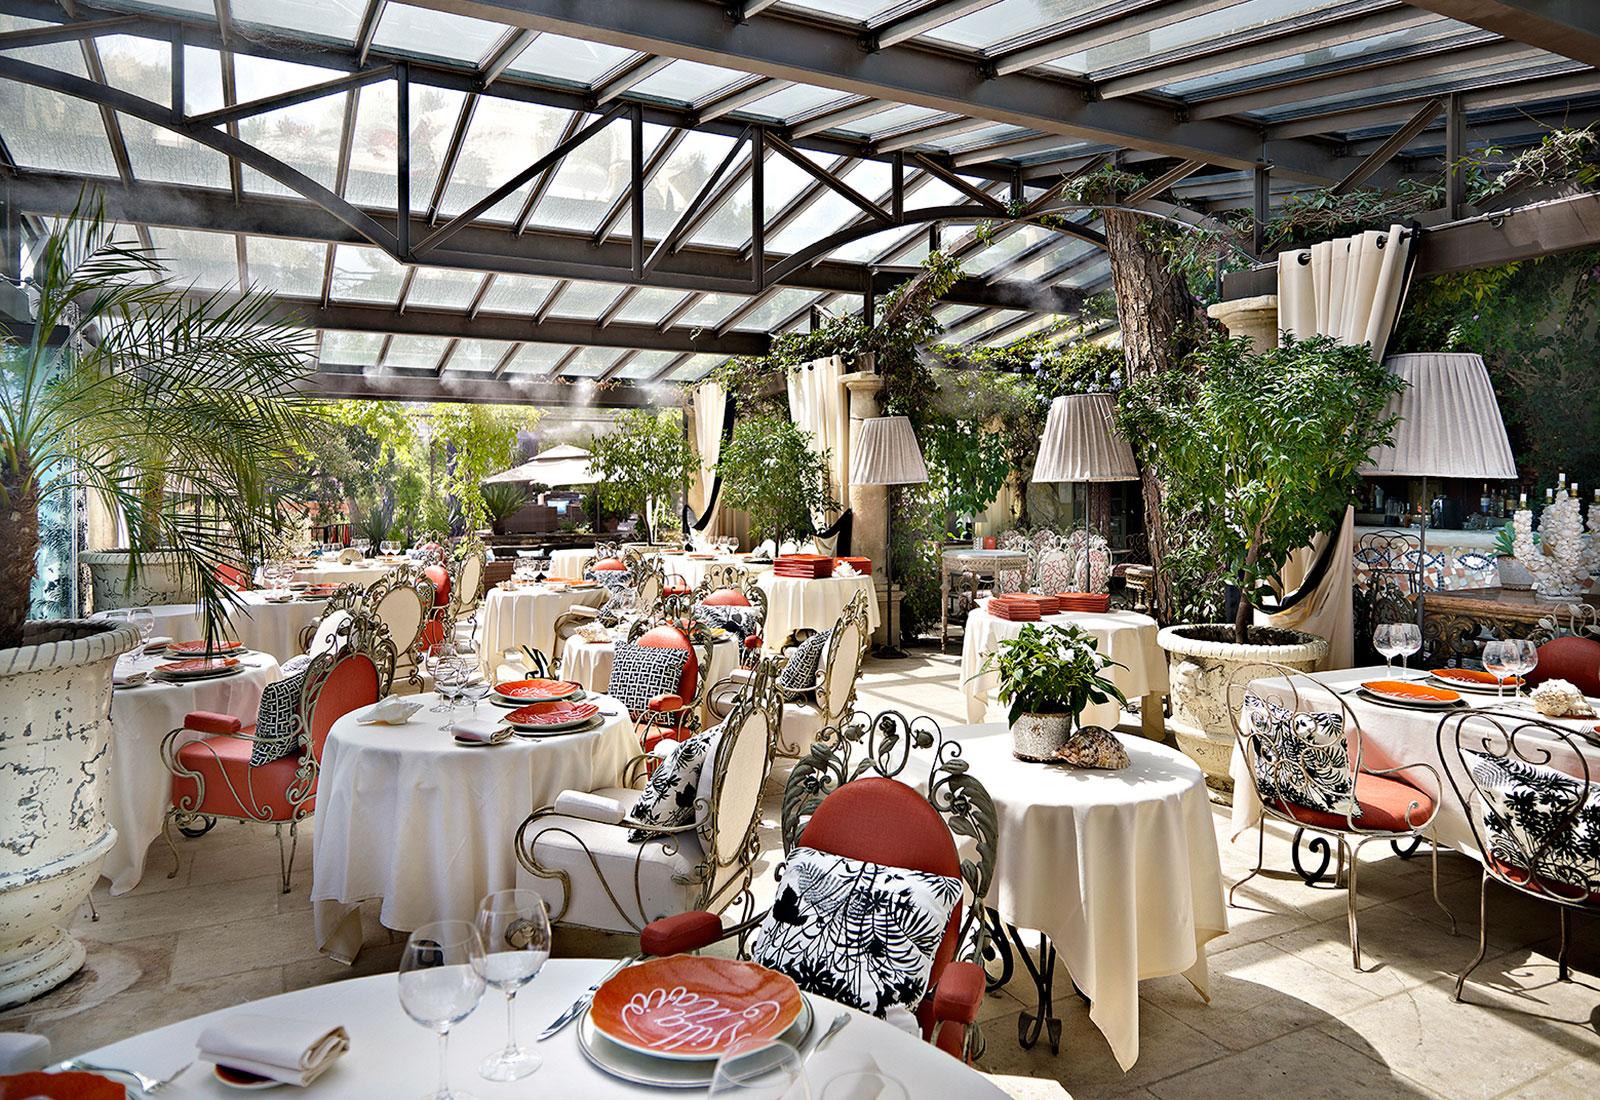 Villa Marie Saint-Tropez. Ett av flera exklusiva hotell som vi presenterar. Lyxhotell och andra exklusiva resorts presenteras i vår guide.